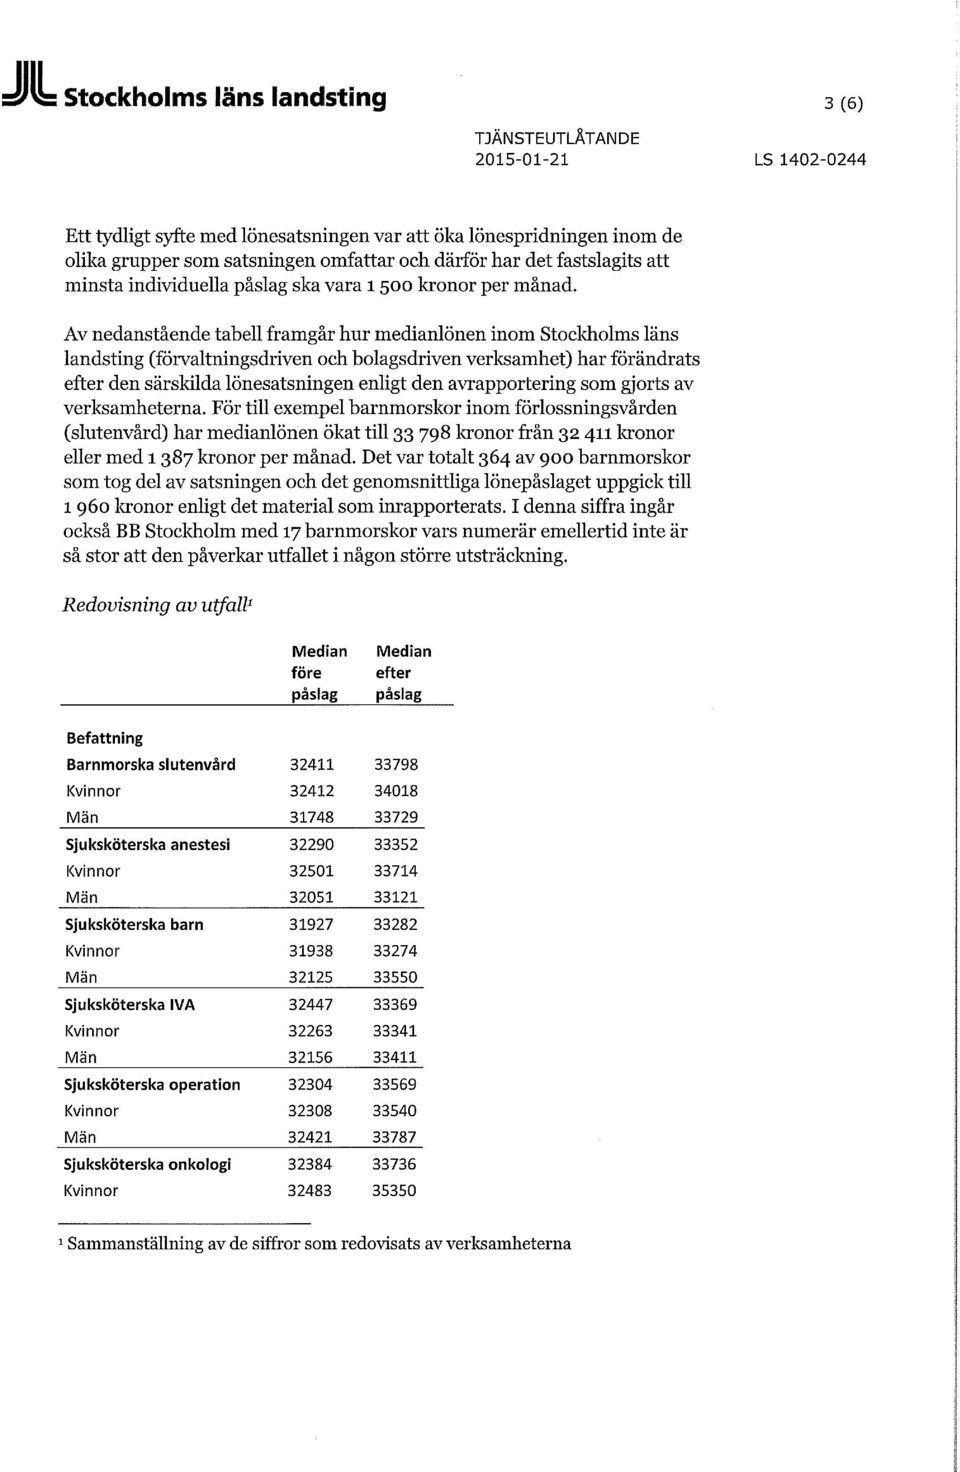 Av nedanstående tabell framgår hur medianlönen inom Stockholms läns landsting (förvaltningsdriven och bolagsdriven verksamhet) har förändrats efter den särskilda lönesatsningen enligt den